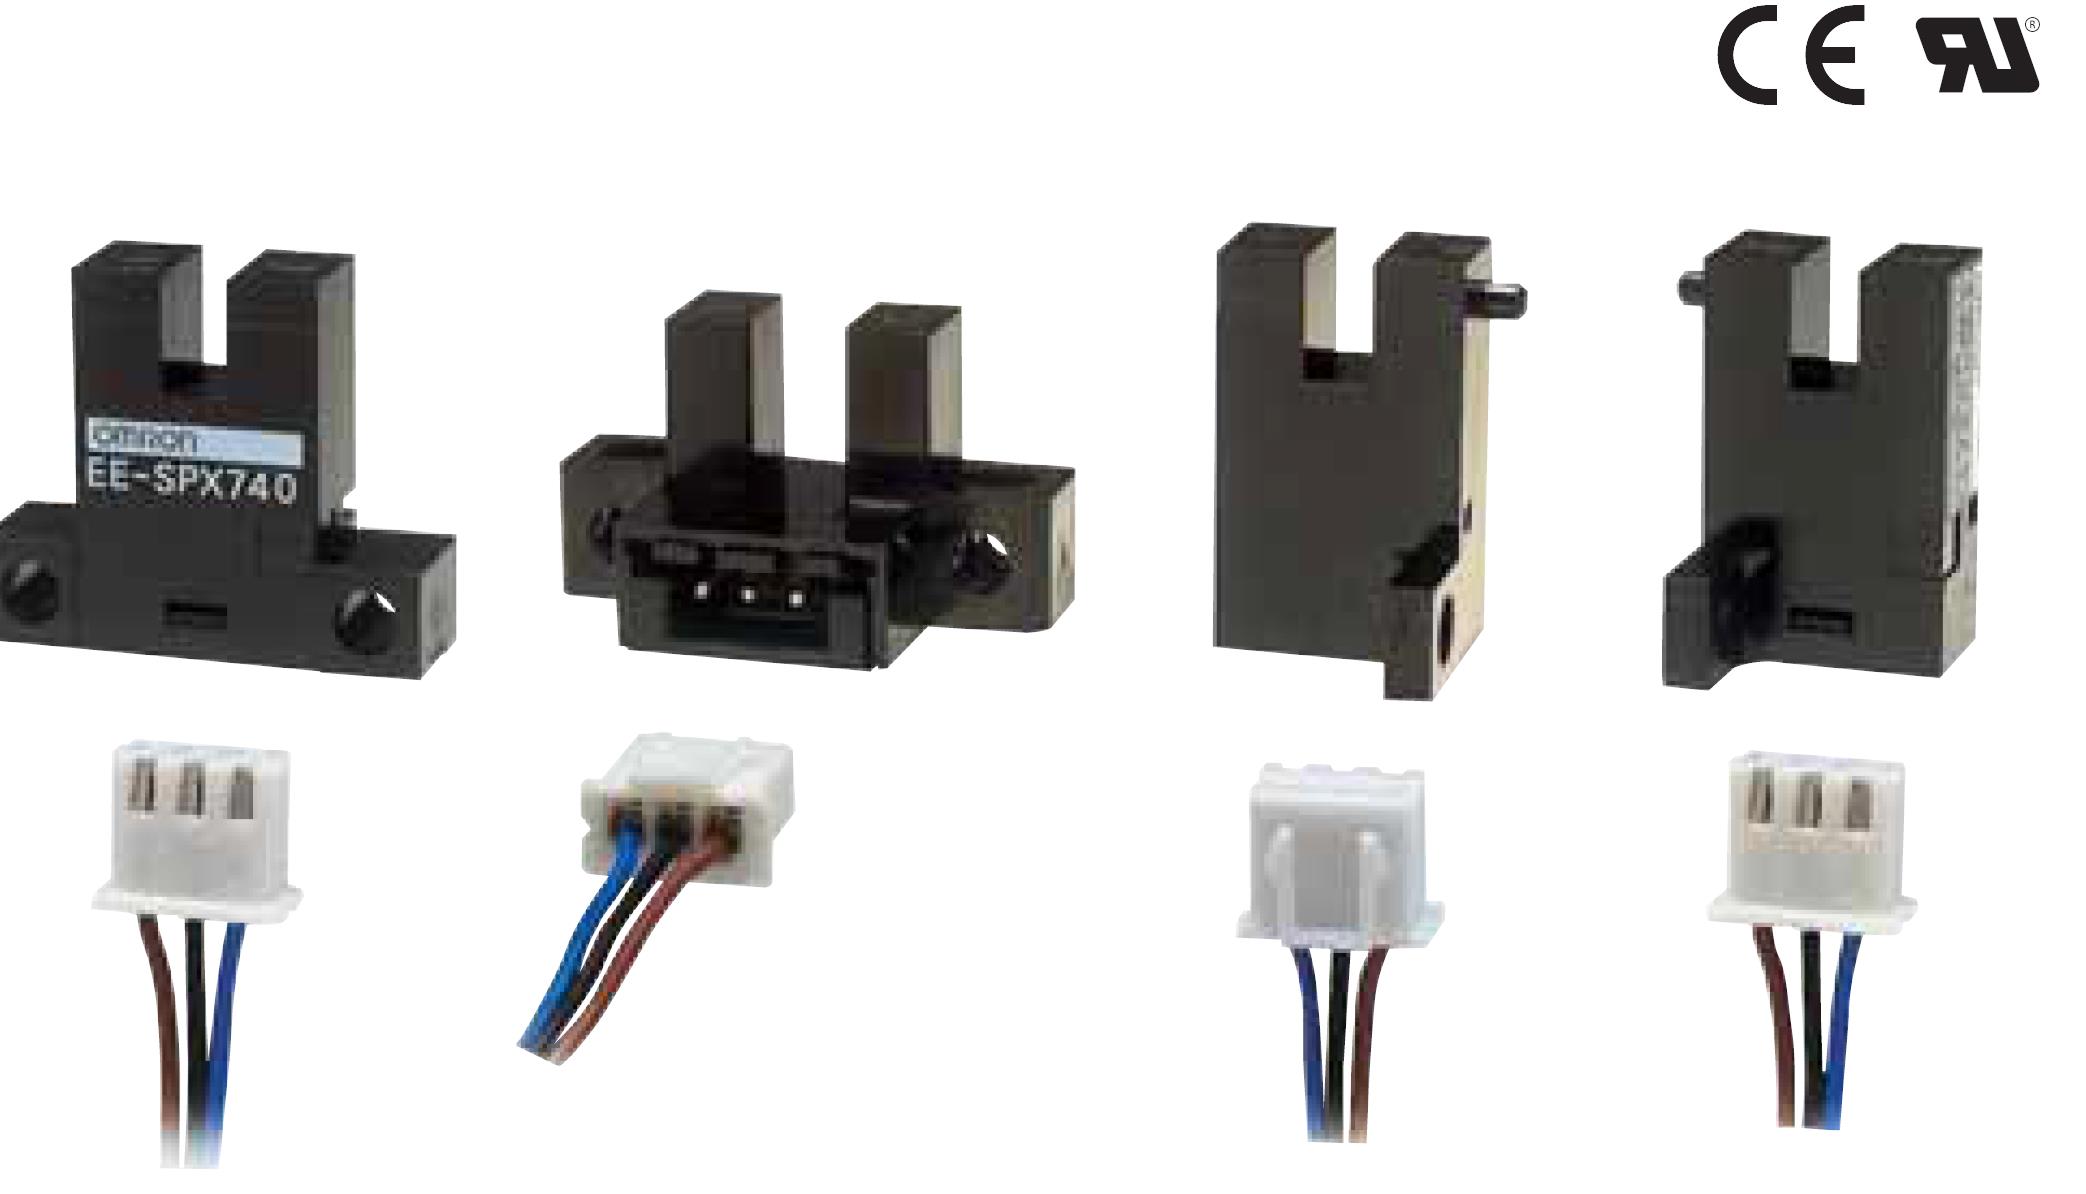 凹槽型接插件型光电传感器控制模式：标准或加热冷却
EE-SPX840